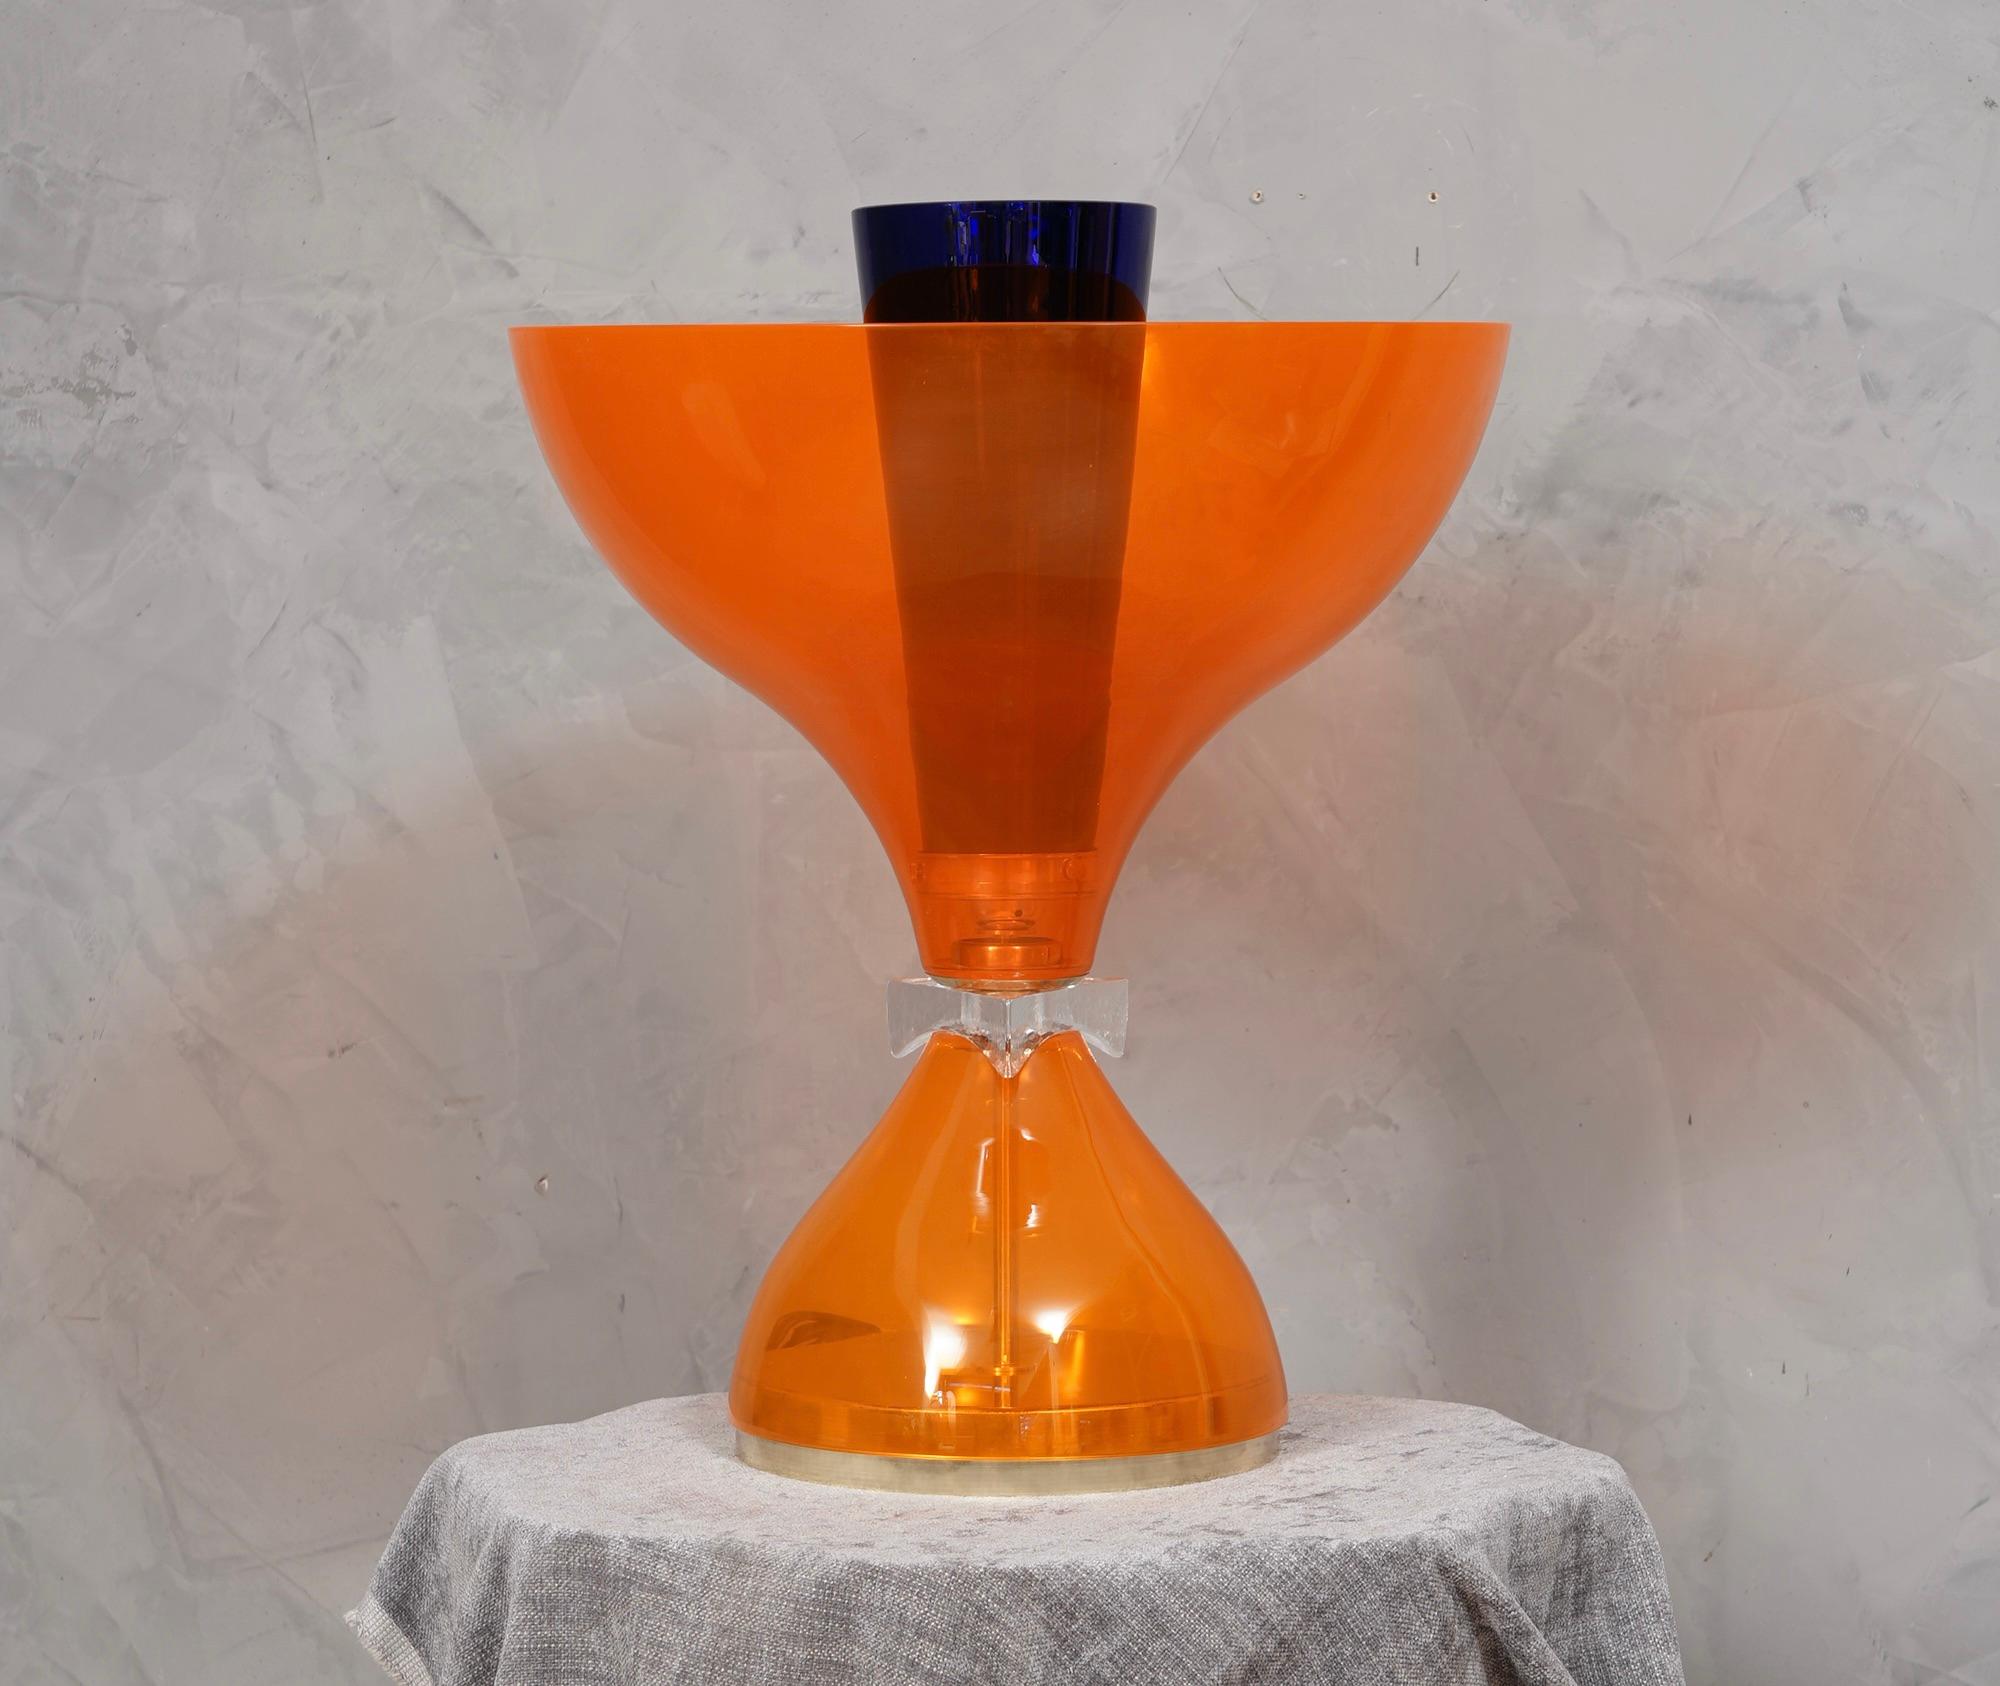 Atemberaubende Murano-Lampen im Stil von Vistosi, in einer spektakulären orange Farbe. Eine belebende, transparente orange Farbe.

Die Tischleuchte besteht aus einer großen orangefarbenen Muranoglasschale, die auf einer orangefarbenen